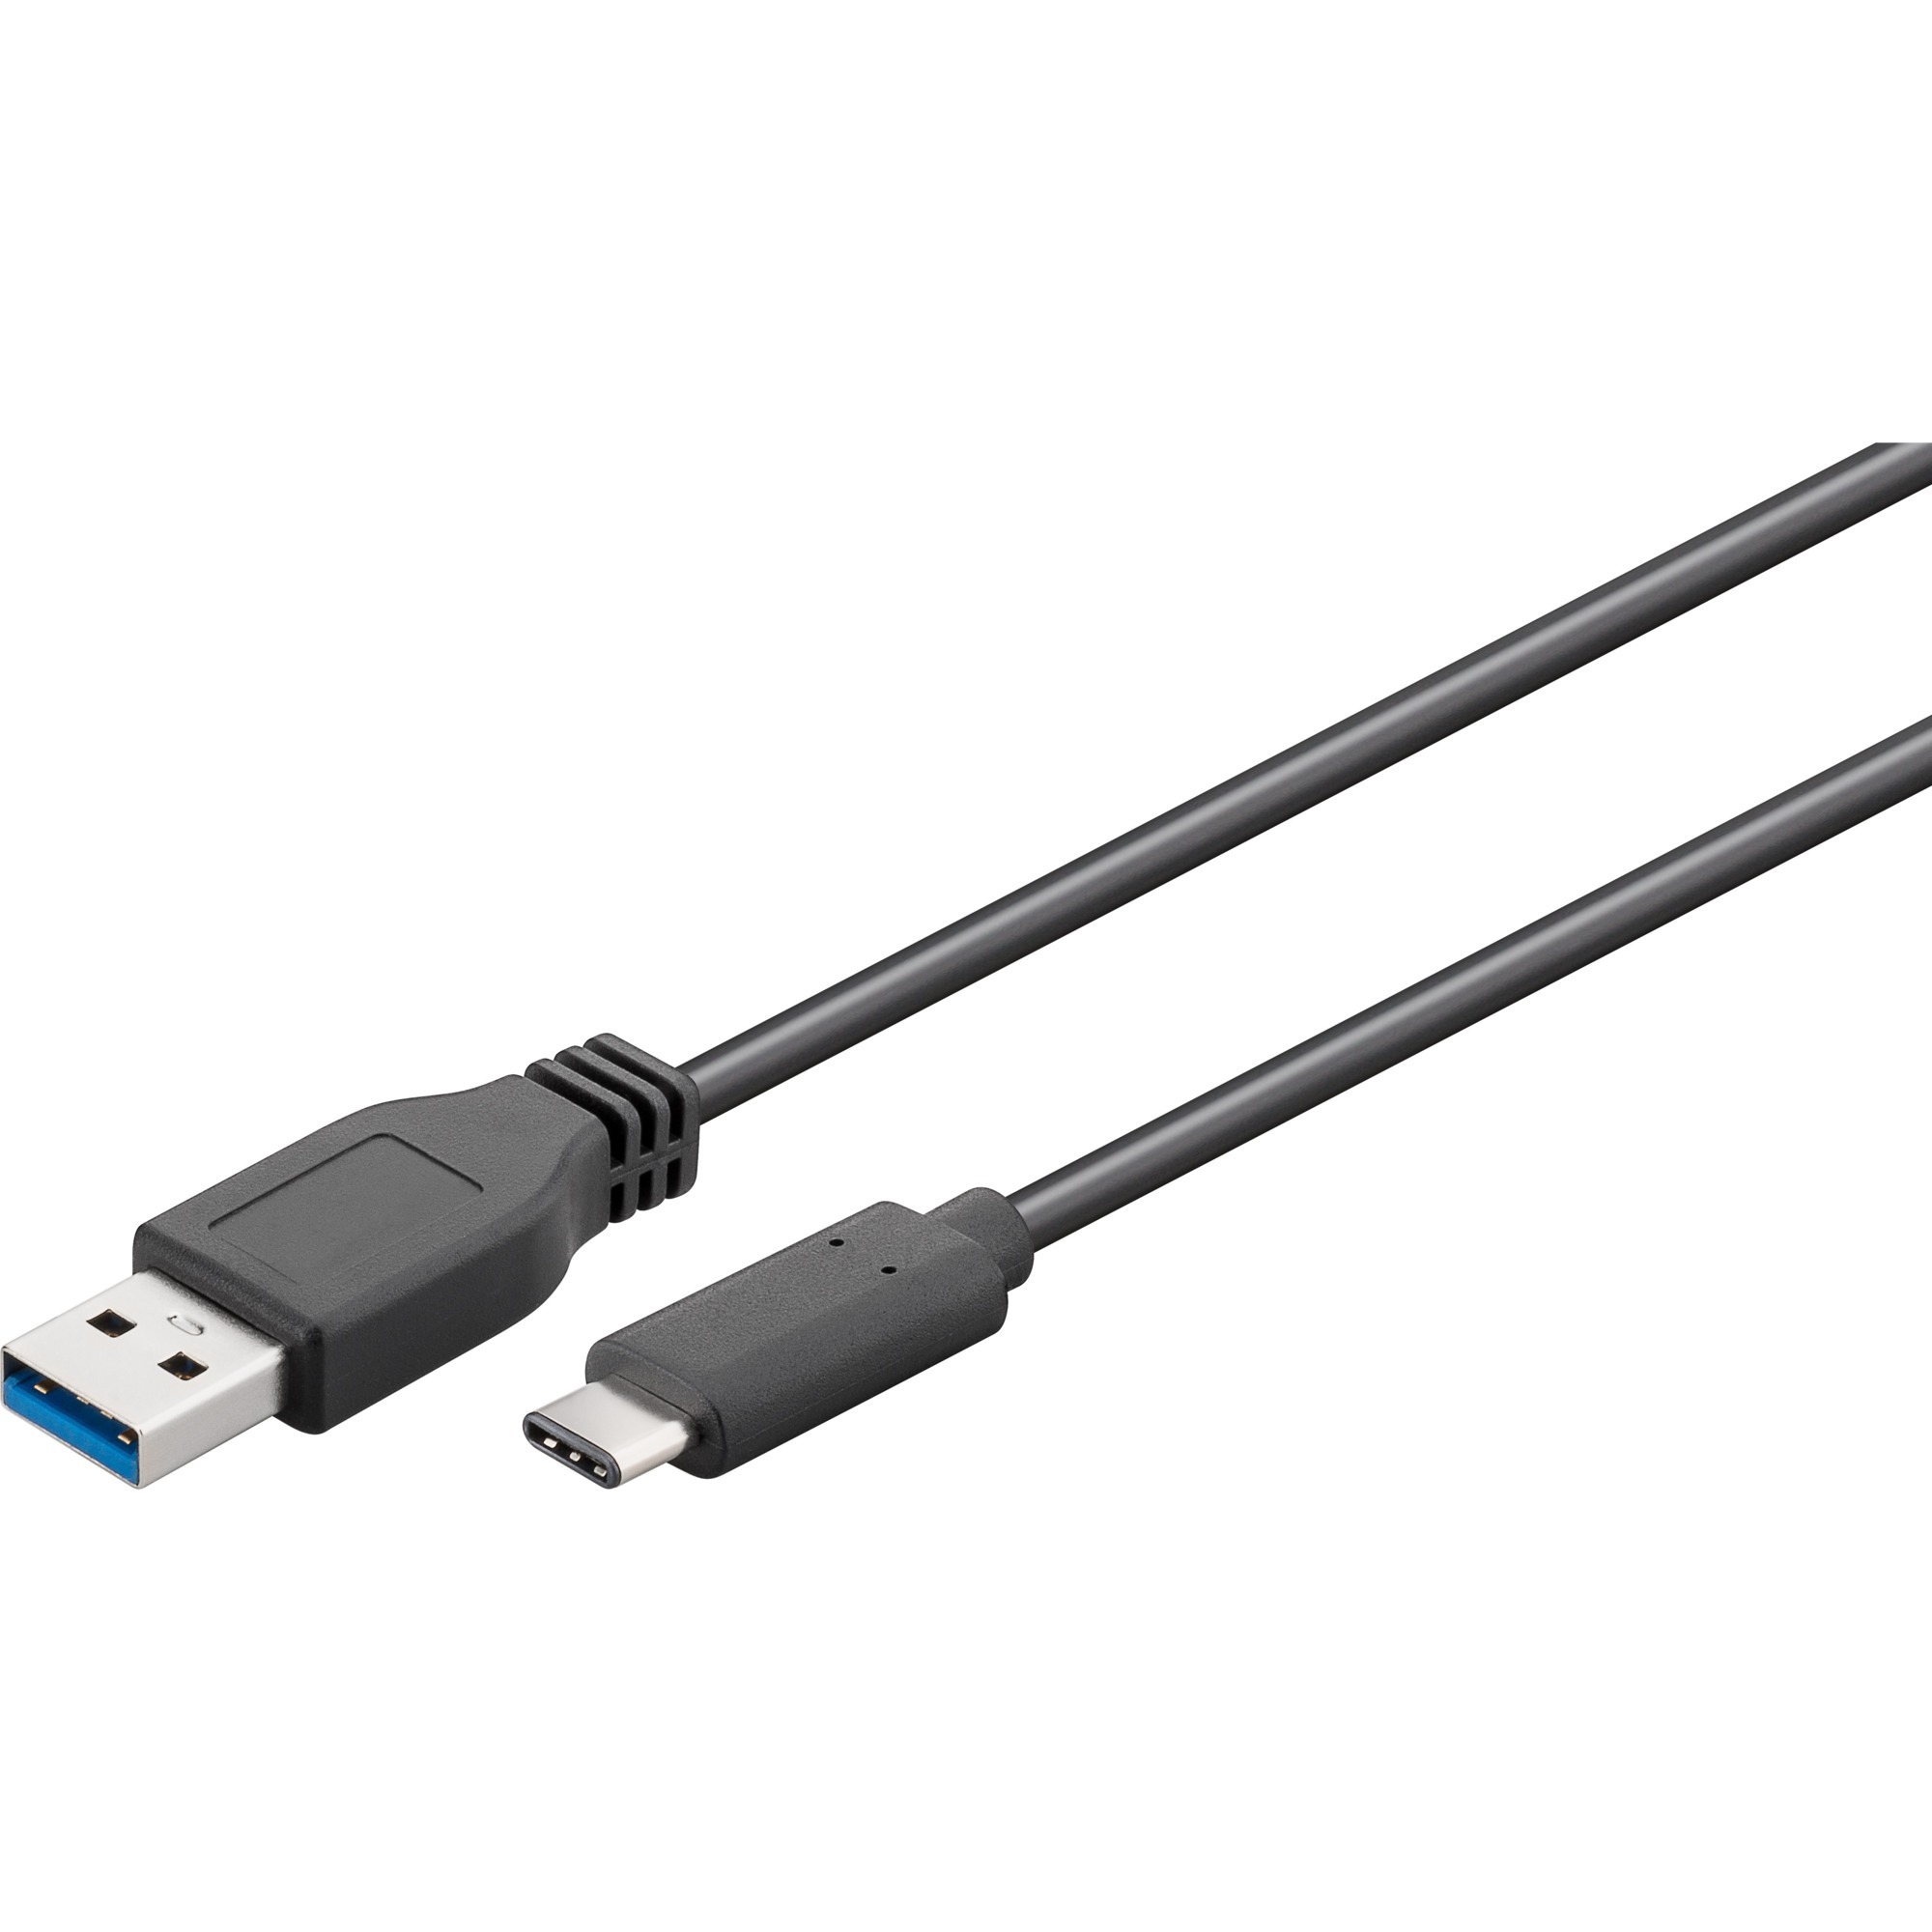 Image of Alternate - USB-A 3.0 Stecker > USB-C Stecker reversible, Kabel online einkaufen bei Alternate